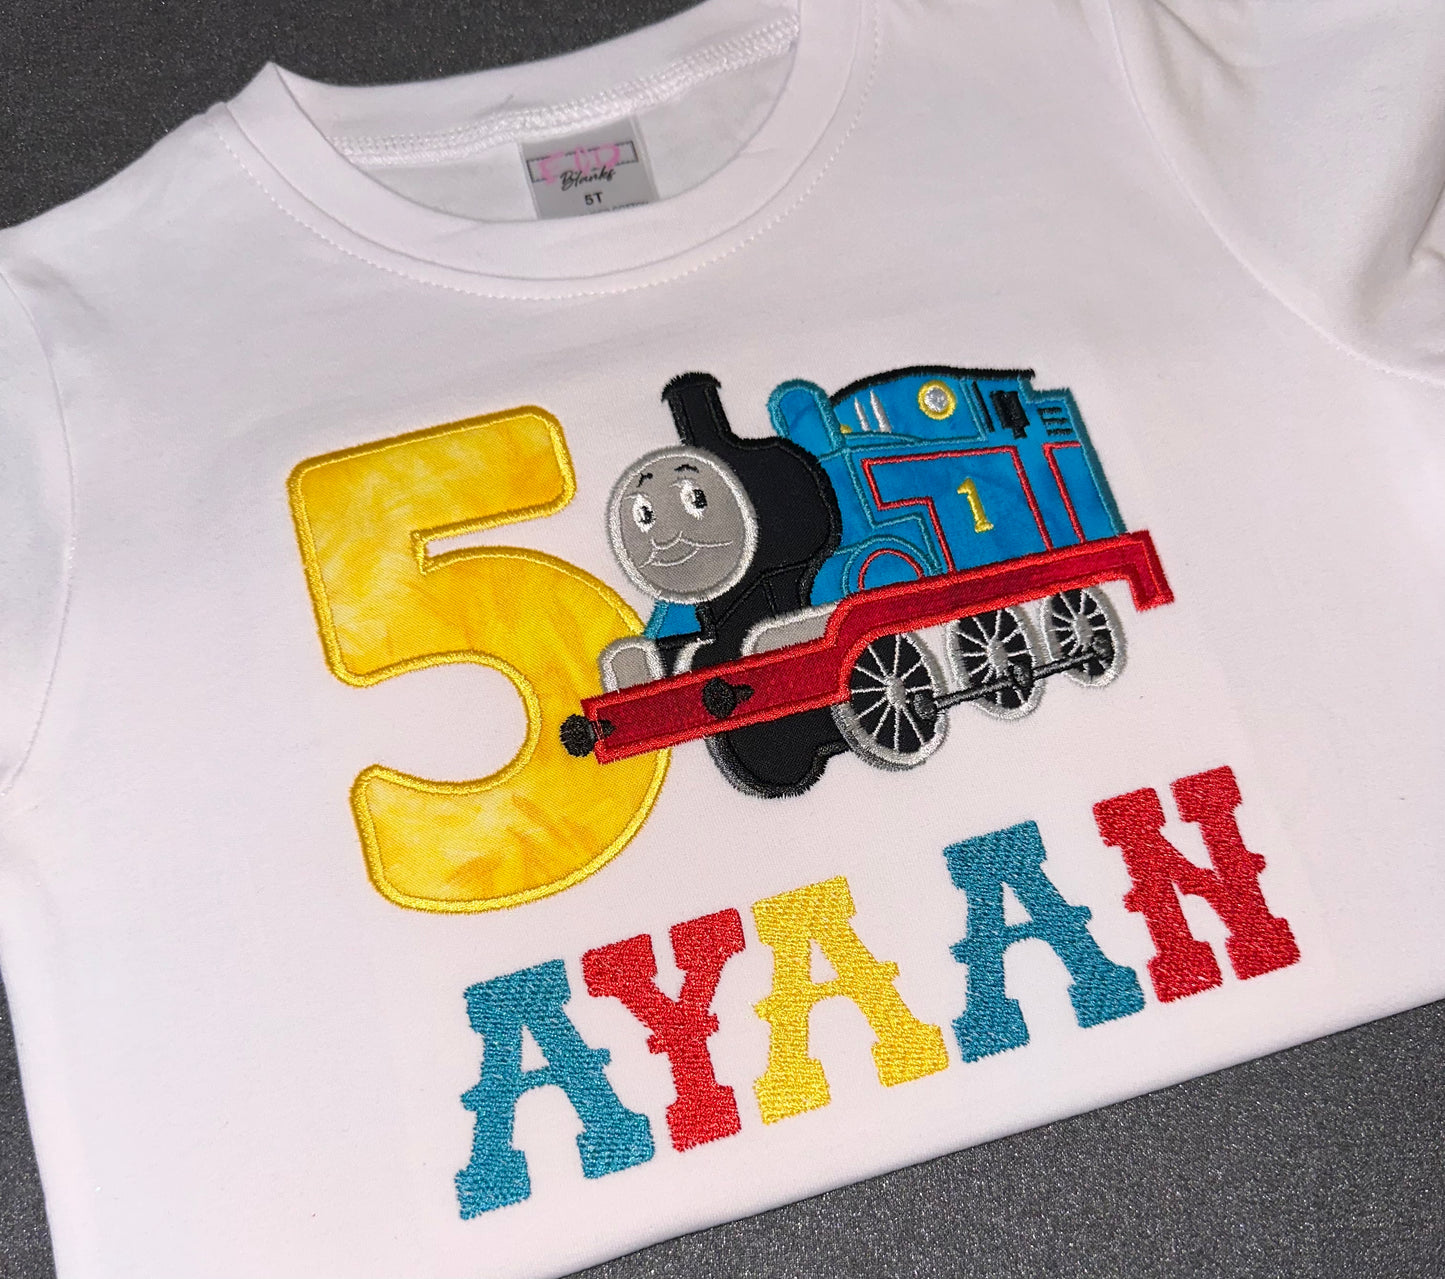 Thomas the train theme birthday shirt for boys. Embroidered on white crew neck